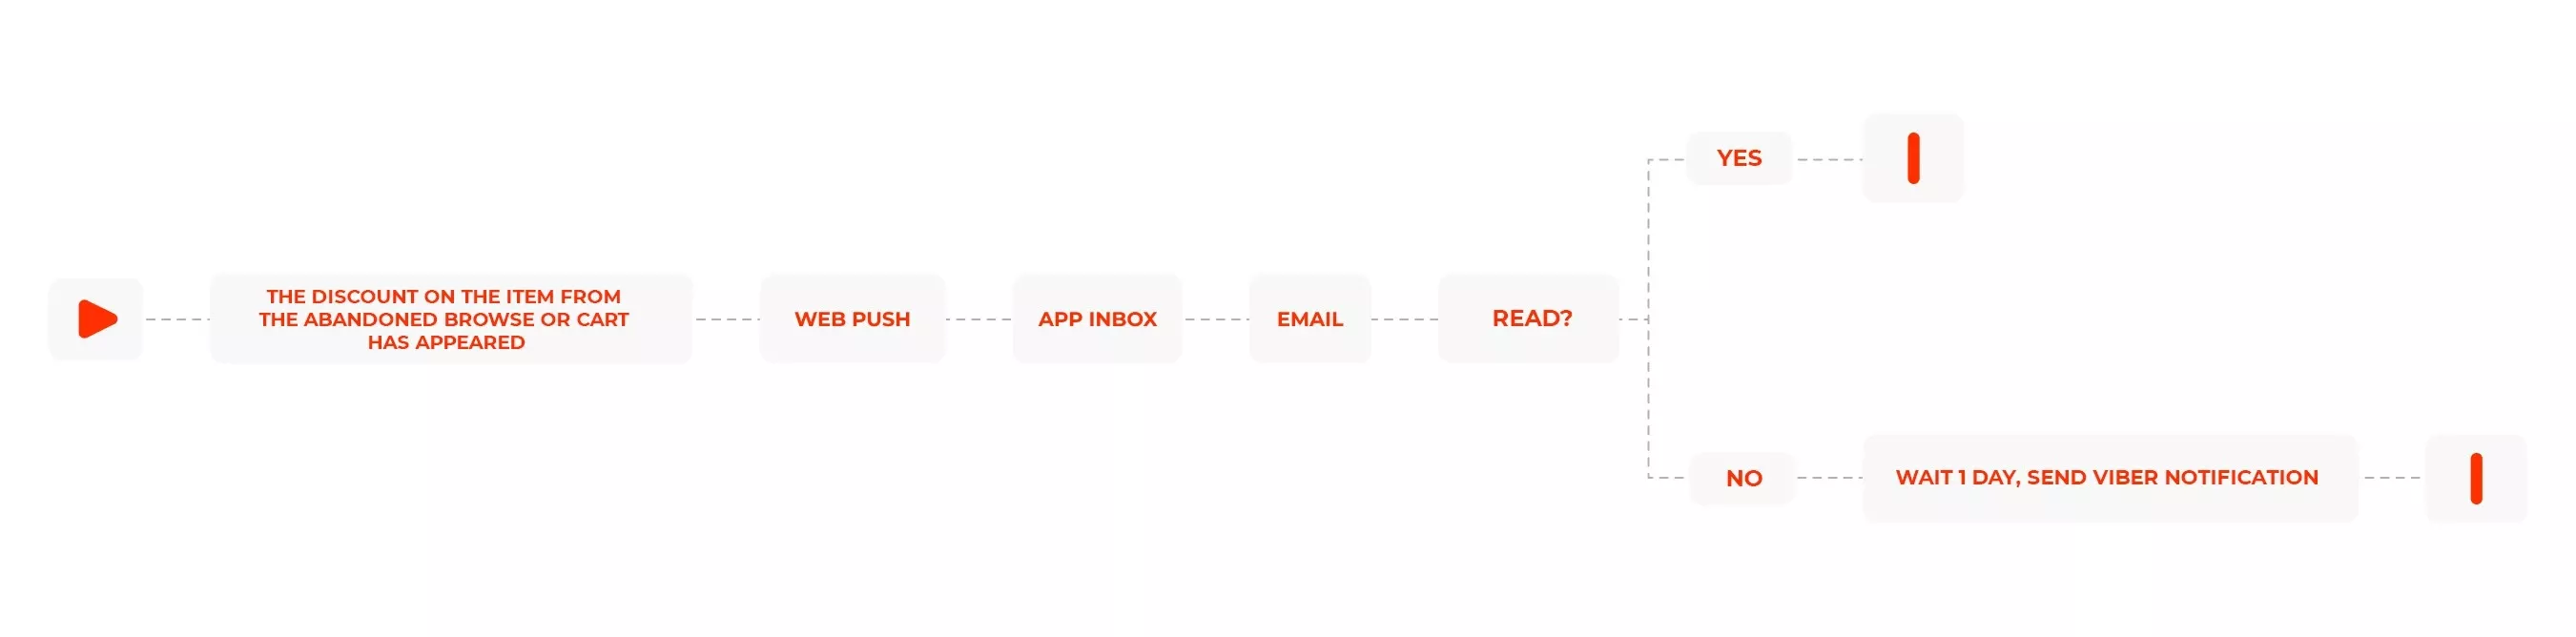 dnipro-m workflow example app inbox